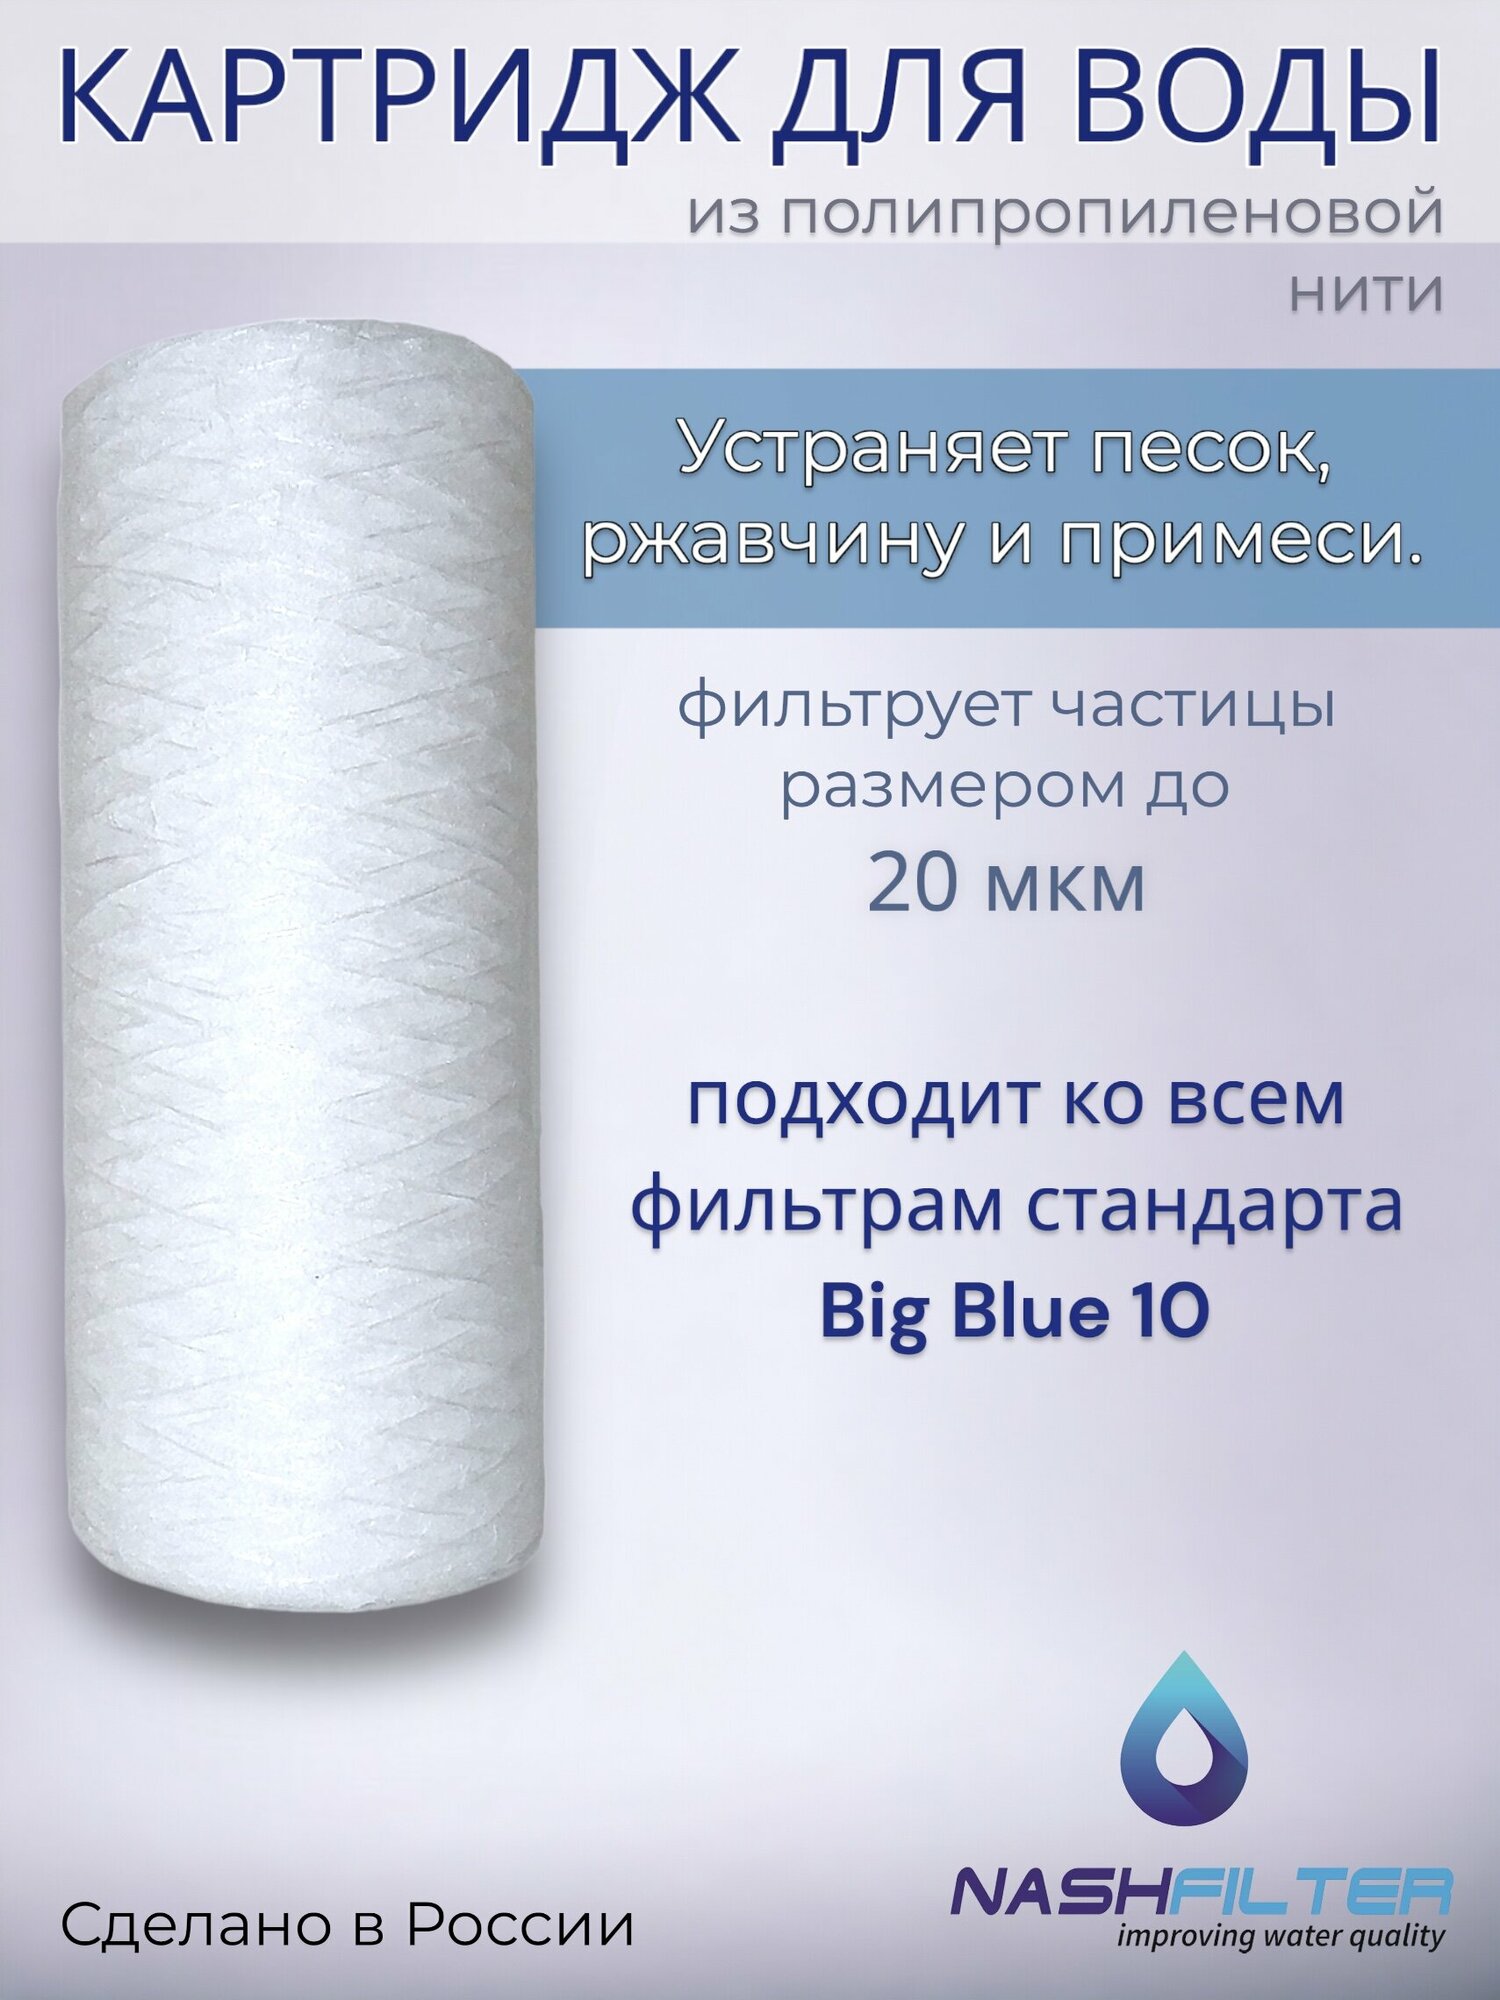 Картридж NASHFILTER для воды из полипропиленовой нити РS 10 Big Blue, 20 мкм